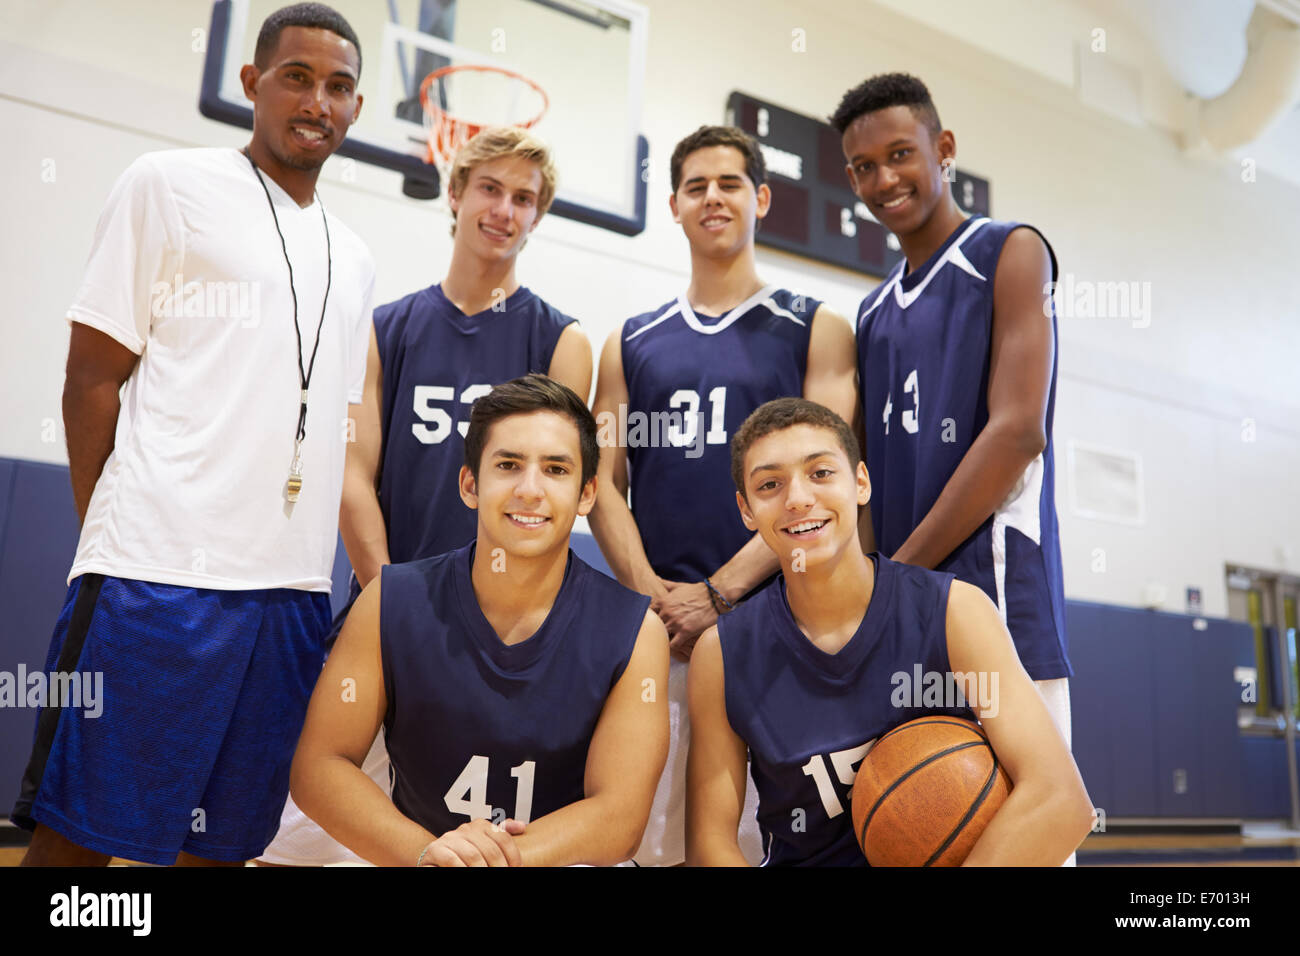 He to high school. Американский школьный баскетбол. Баскетболисты в американской школе. Команда в баскетболе американская школа. Баскетбол в американских школах.